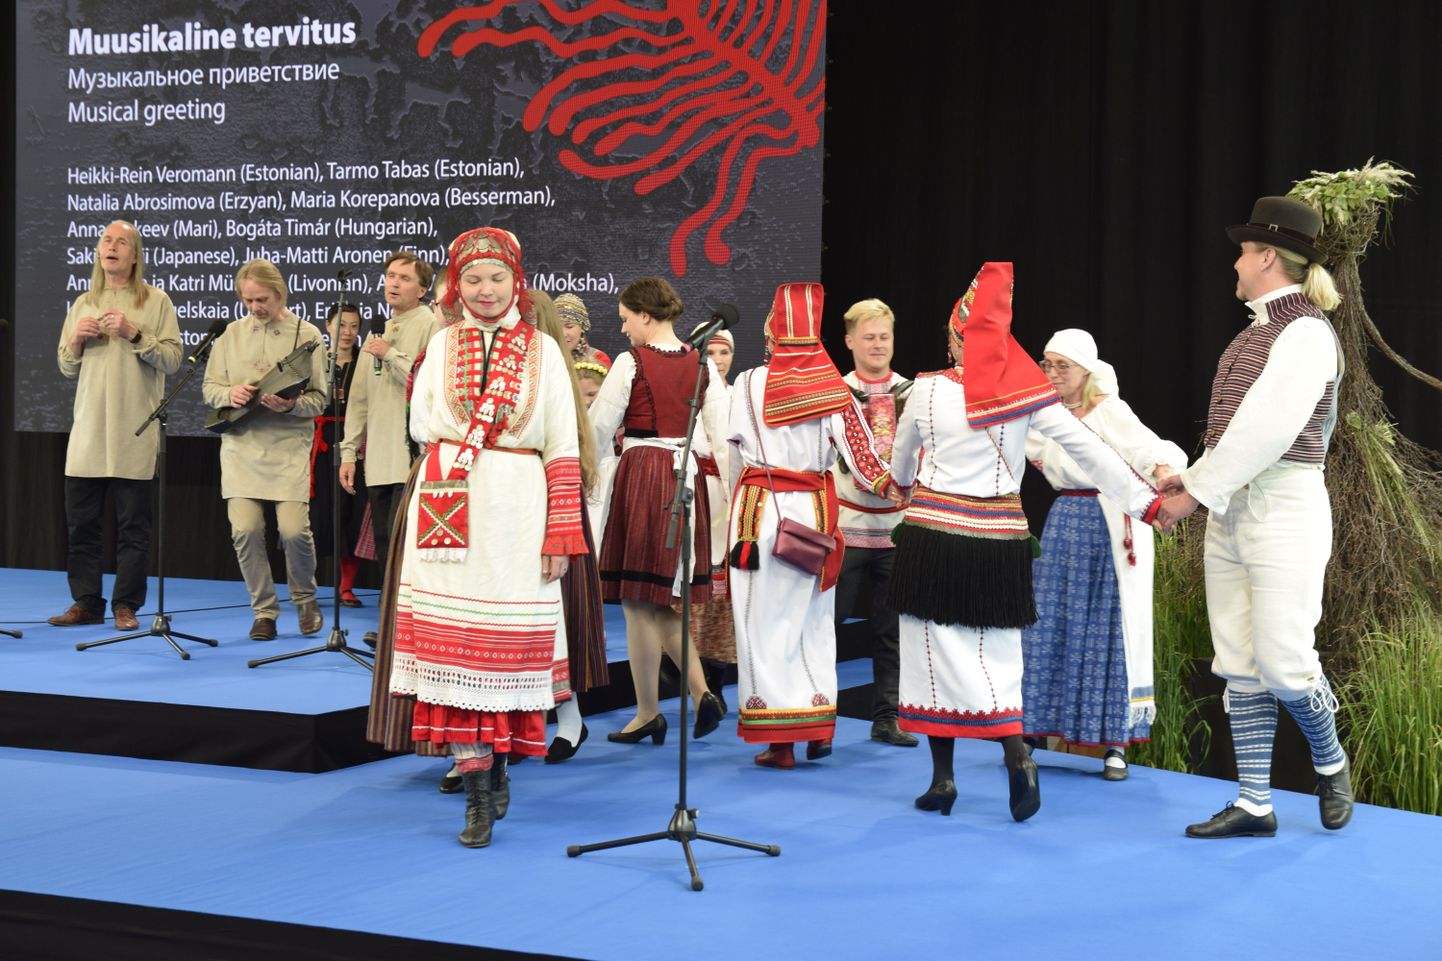 Soome-ugri rahvaste ühine muusikaline tervitus VIII soome-ugri rahvaste maailmakongressil Tartus 2021